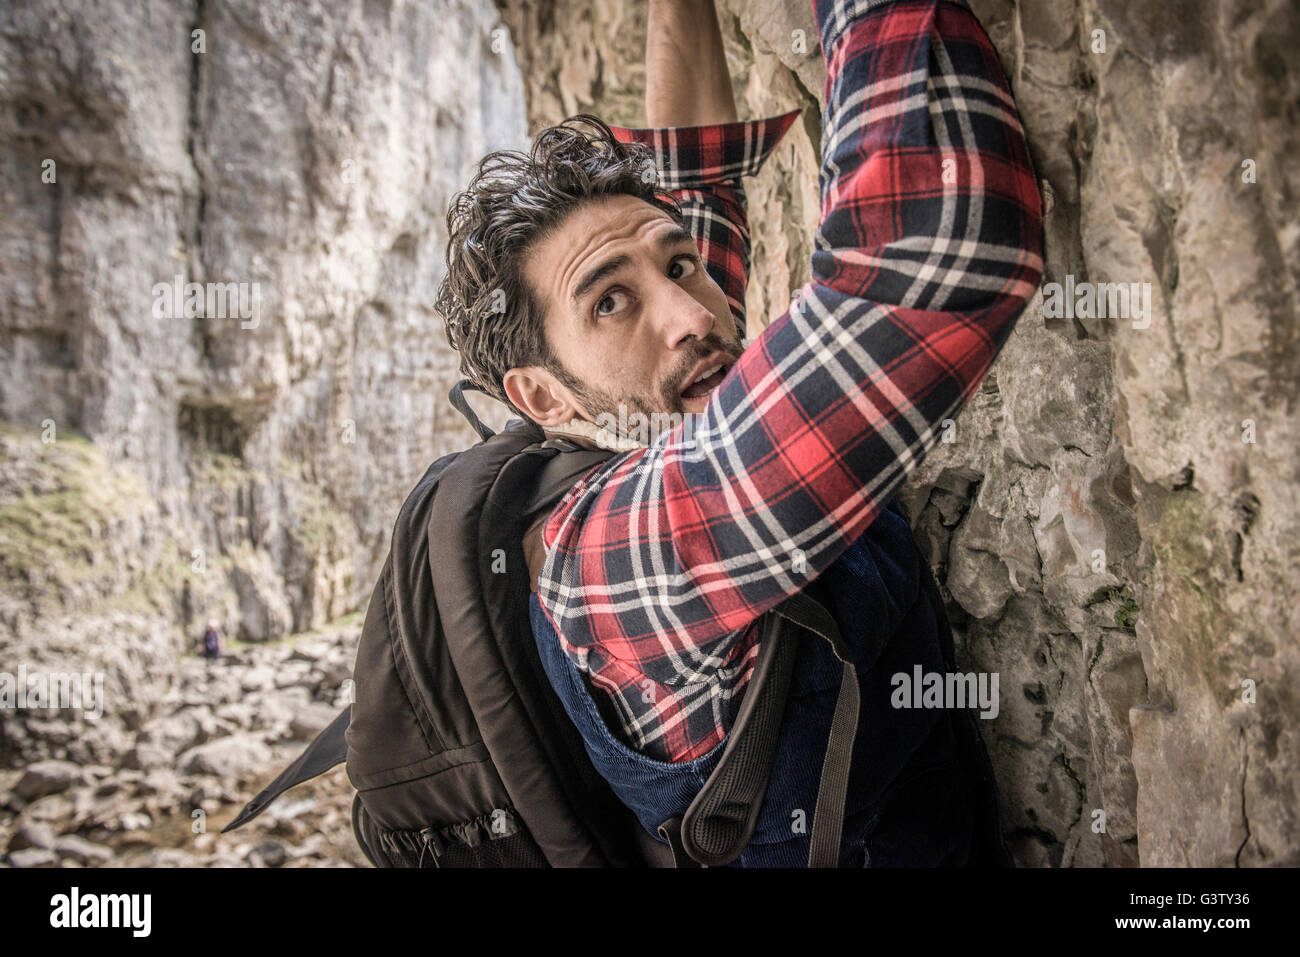 L'alpiniste traversant une barre rocheuse en terrain difficile. Banque D'Images